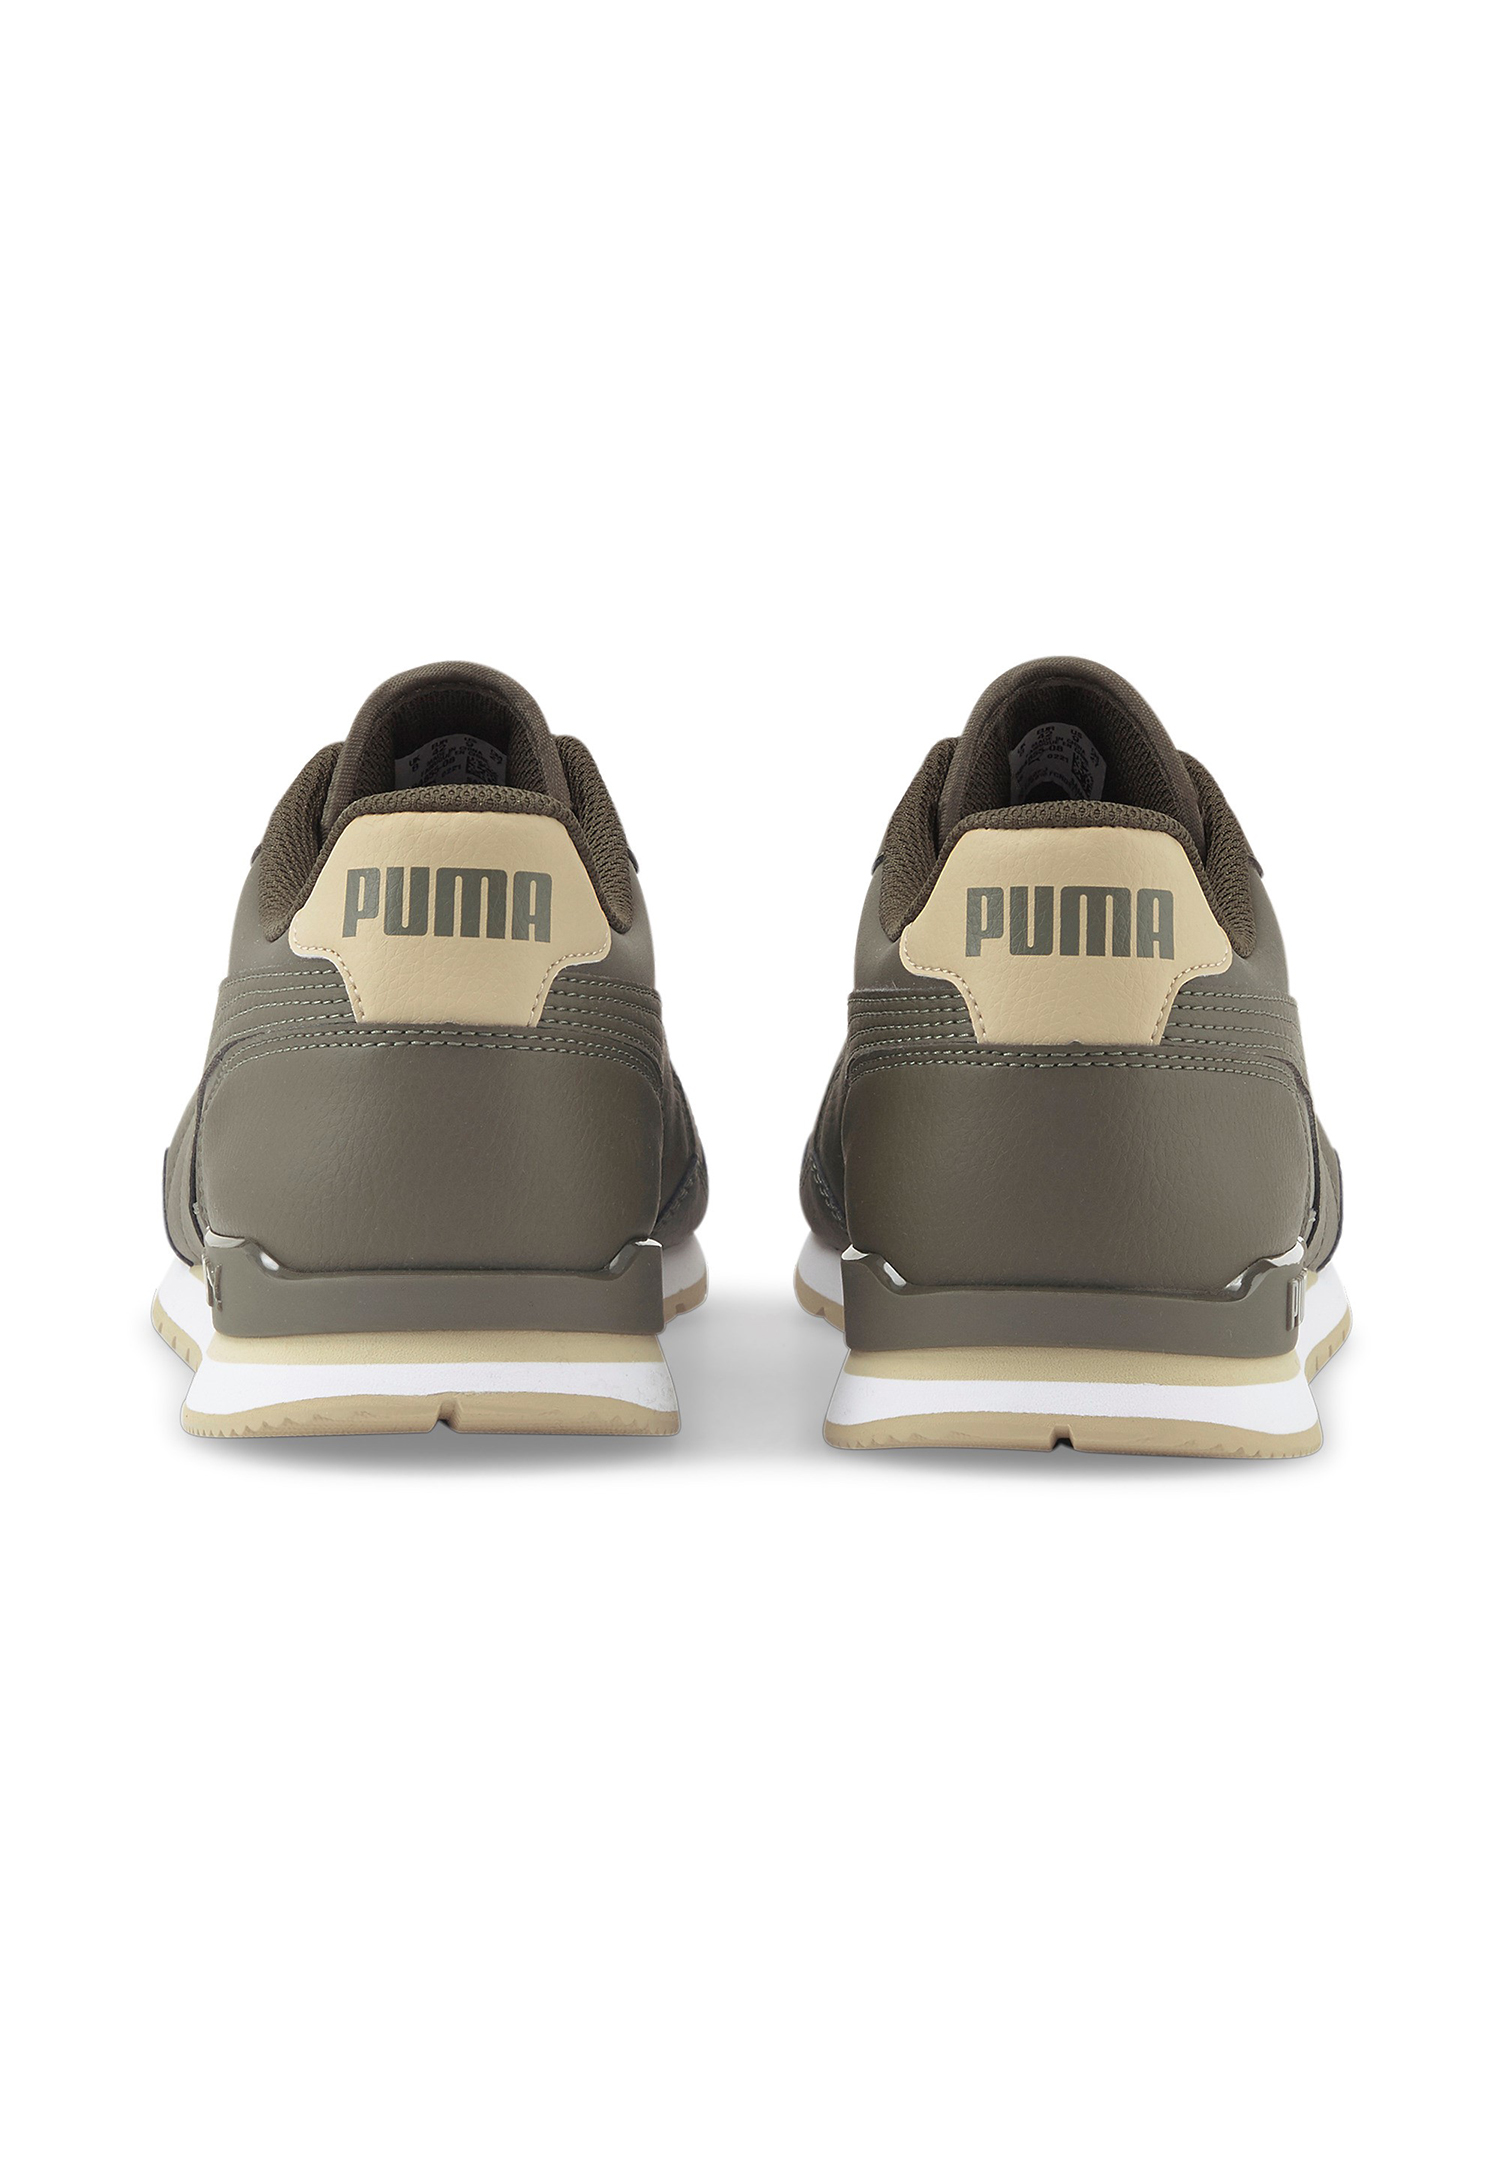 Puma ST Runner v3 Full L Unisex Sneaker Turnschuhe 384855 08 khaki